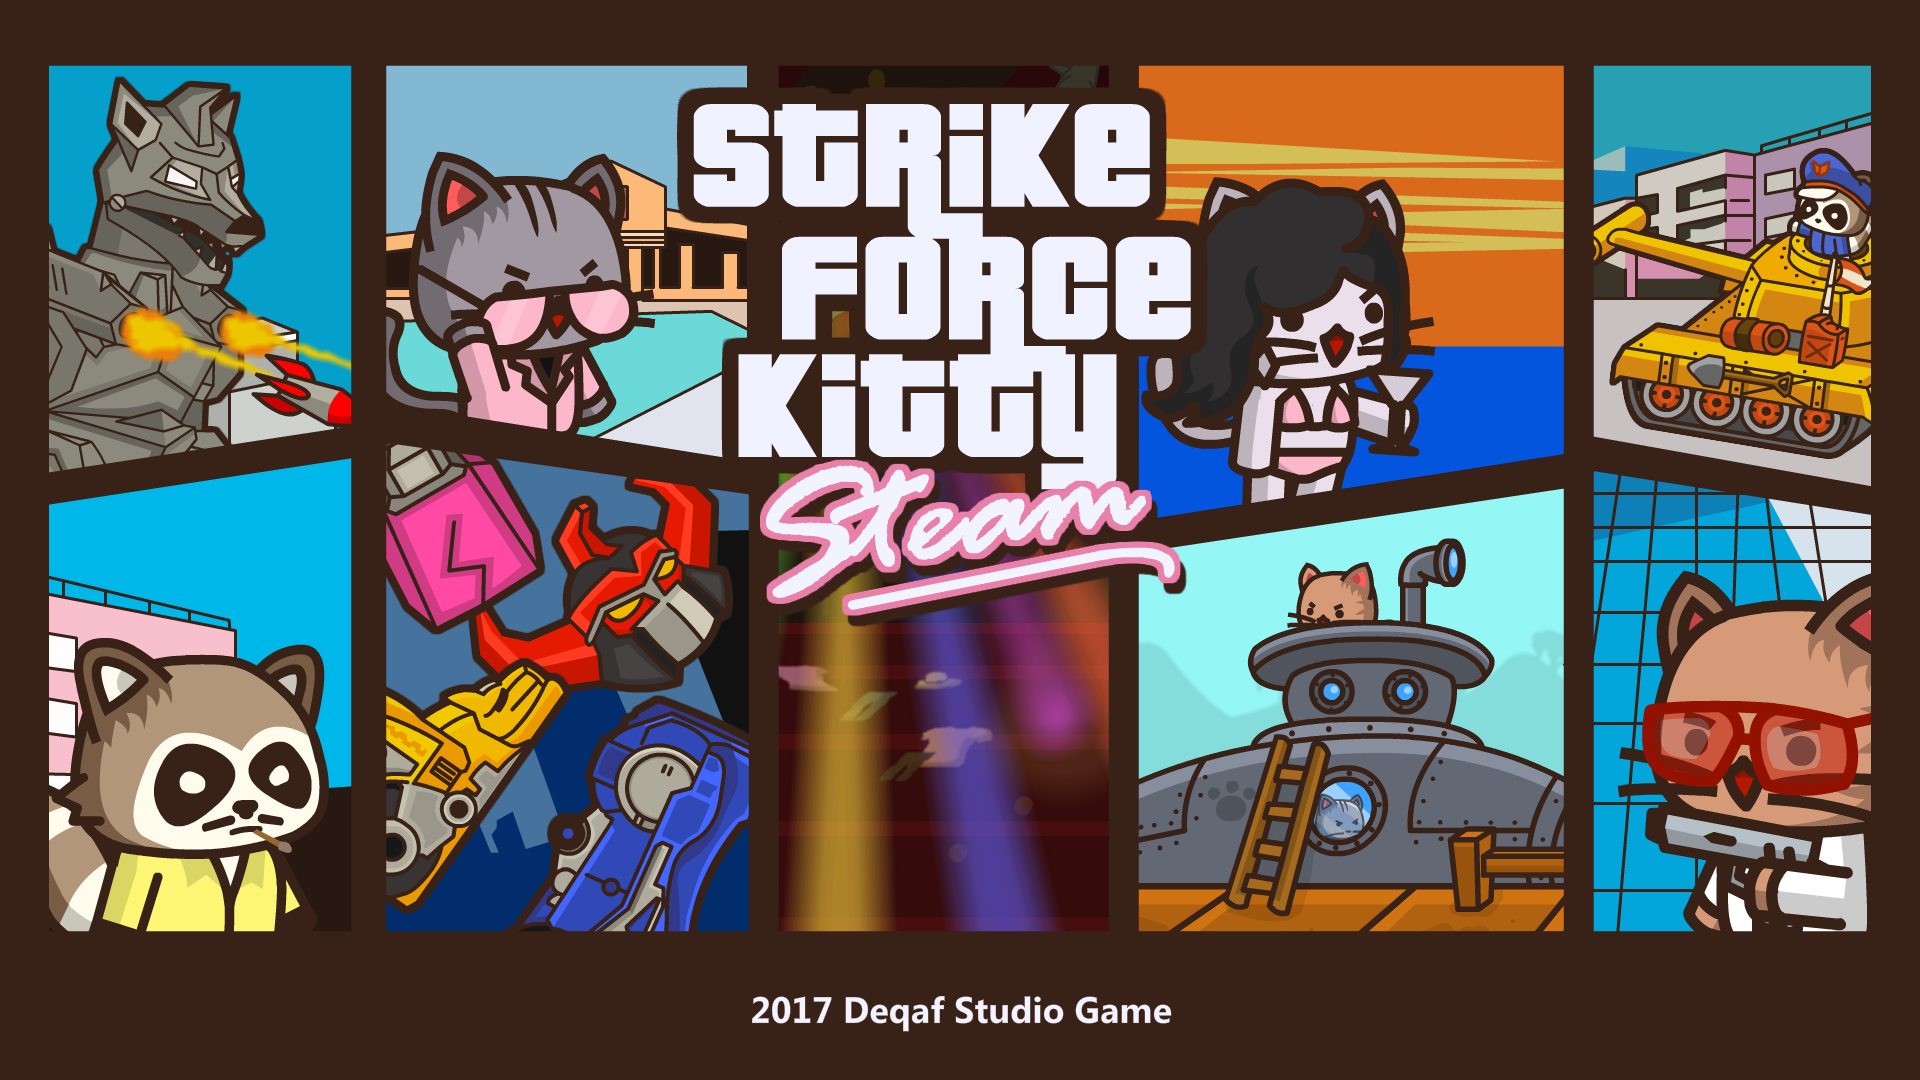 Buy StrikeForce Kitty
			Buy StrikeForce Kitty + OST